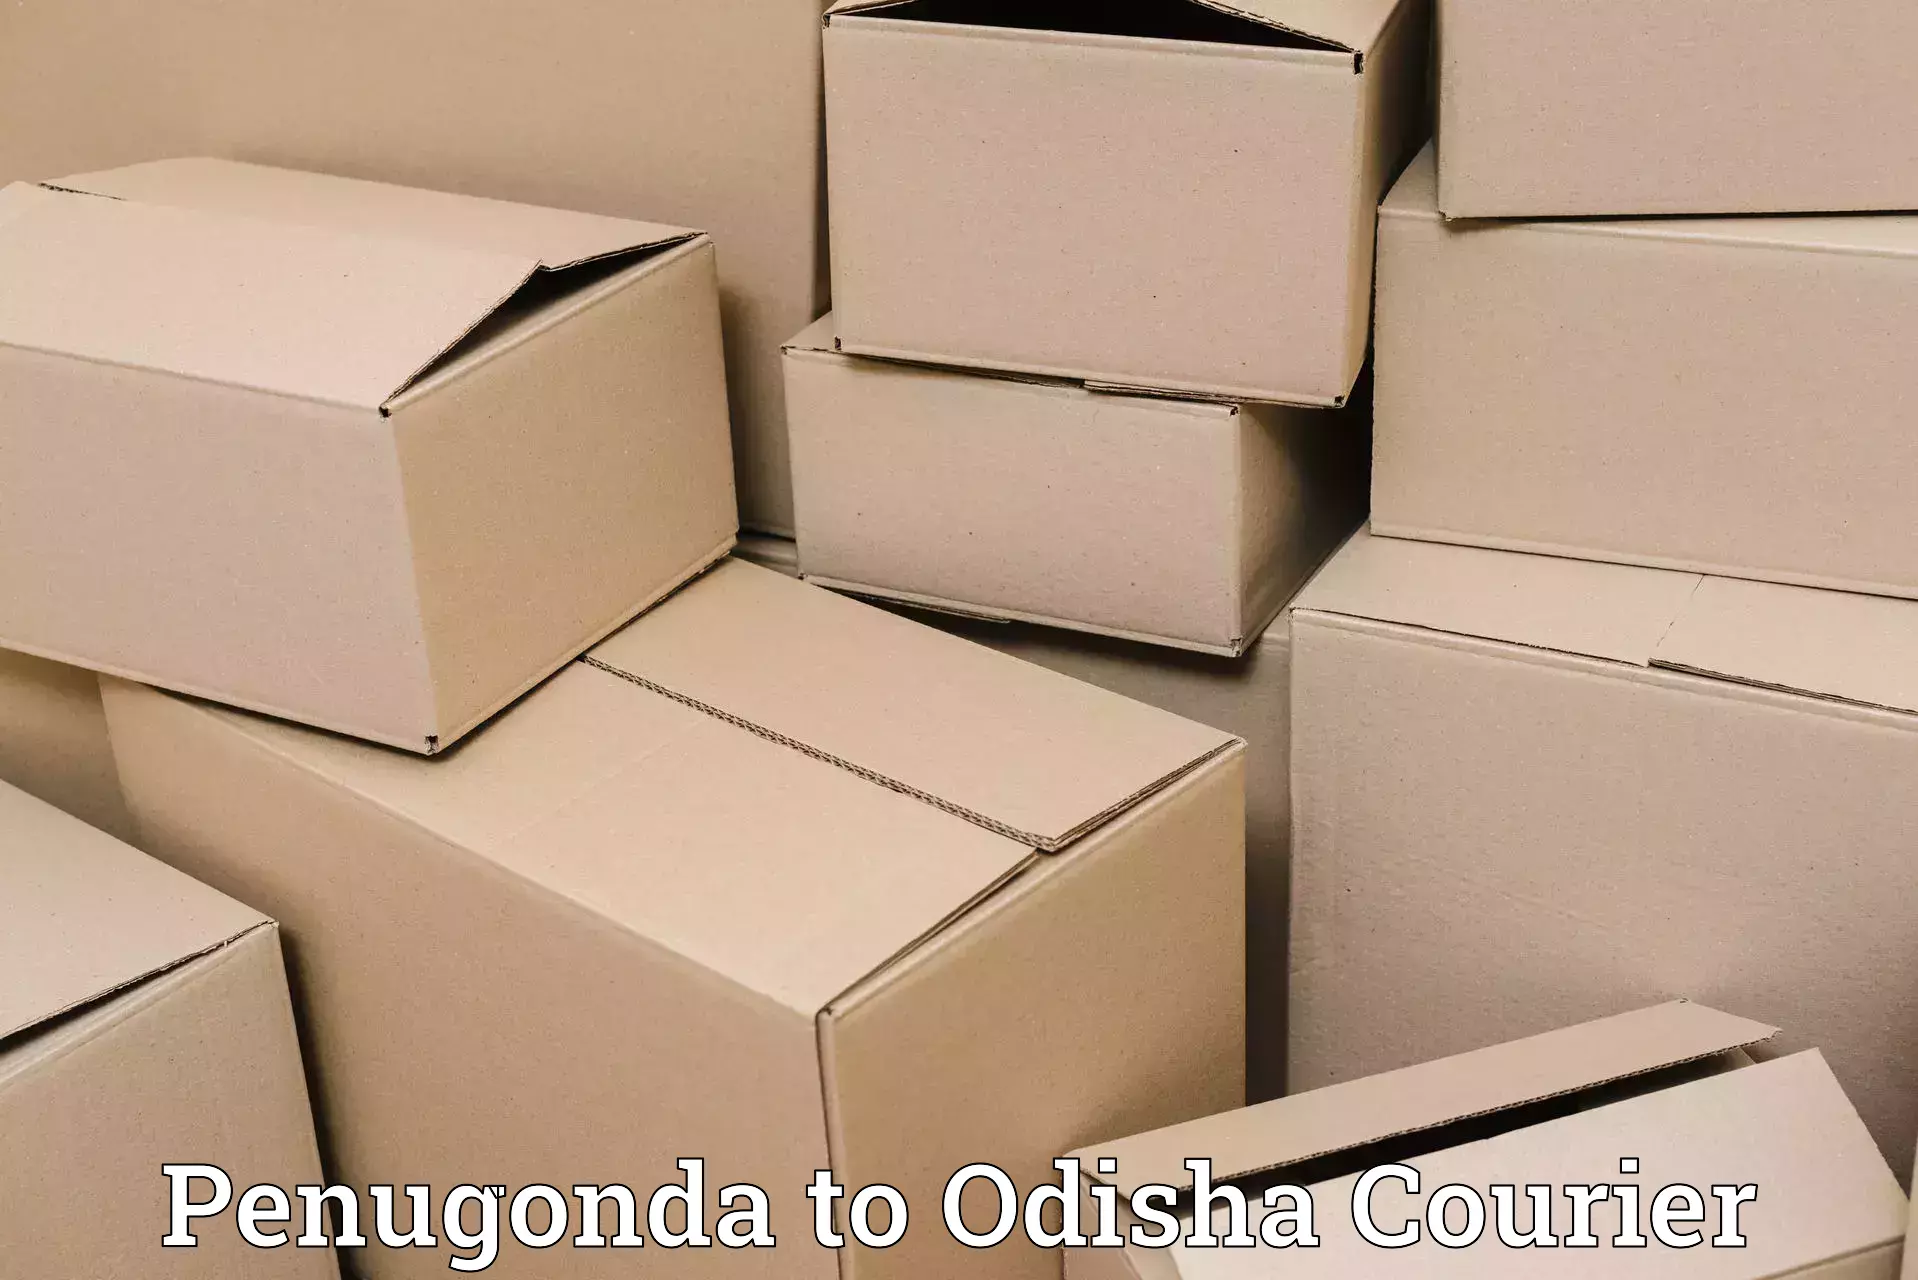 Efficient parcel transport Penugonda to Tihidi